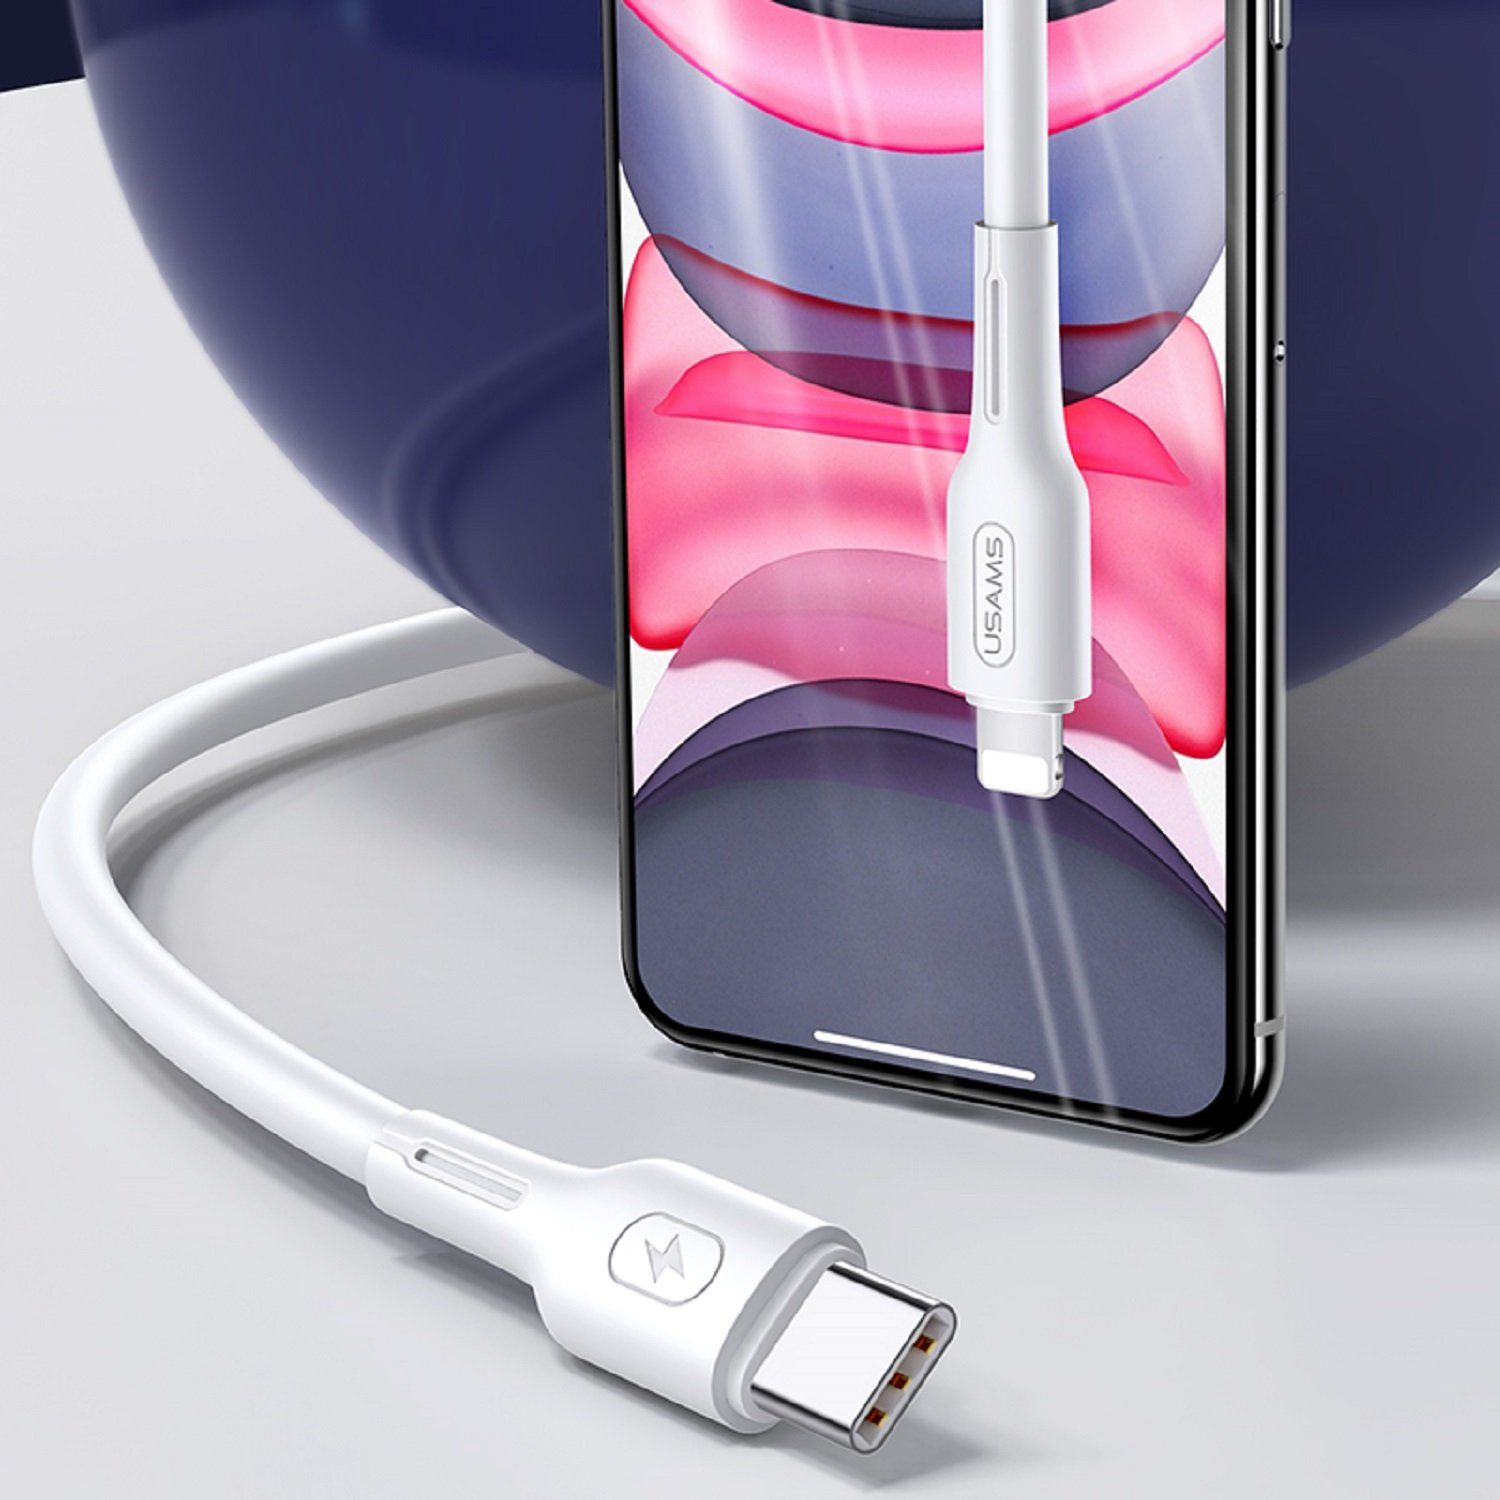 für Schnell USAMS (Eurostecker), Lightning Kabel C Smartphone-Kabel, Apple auf und Typ Lightning cm), (1.2 Datenkabel iPhone Ladekabel 30W Typ-C-zu-Lightning-PD-Schnelllade- USB-C, Weiß USB-C